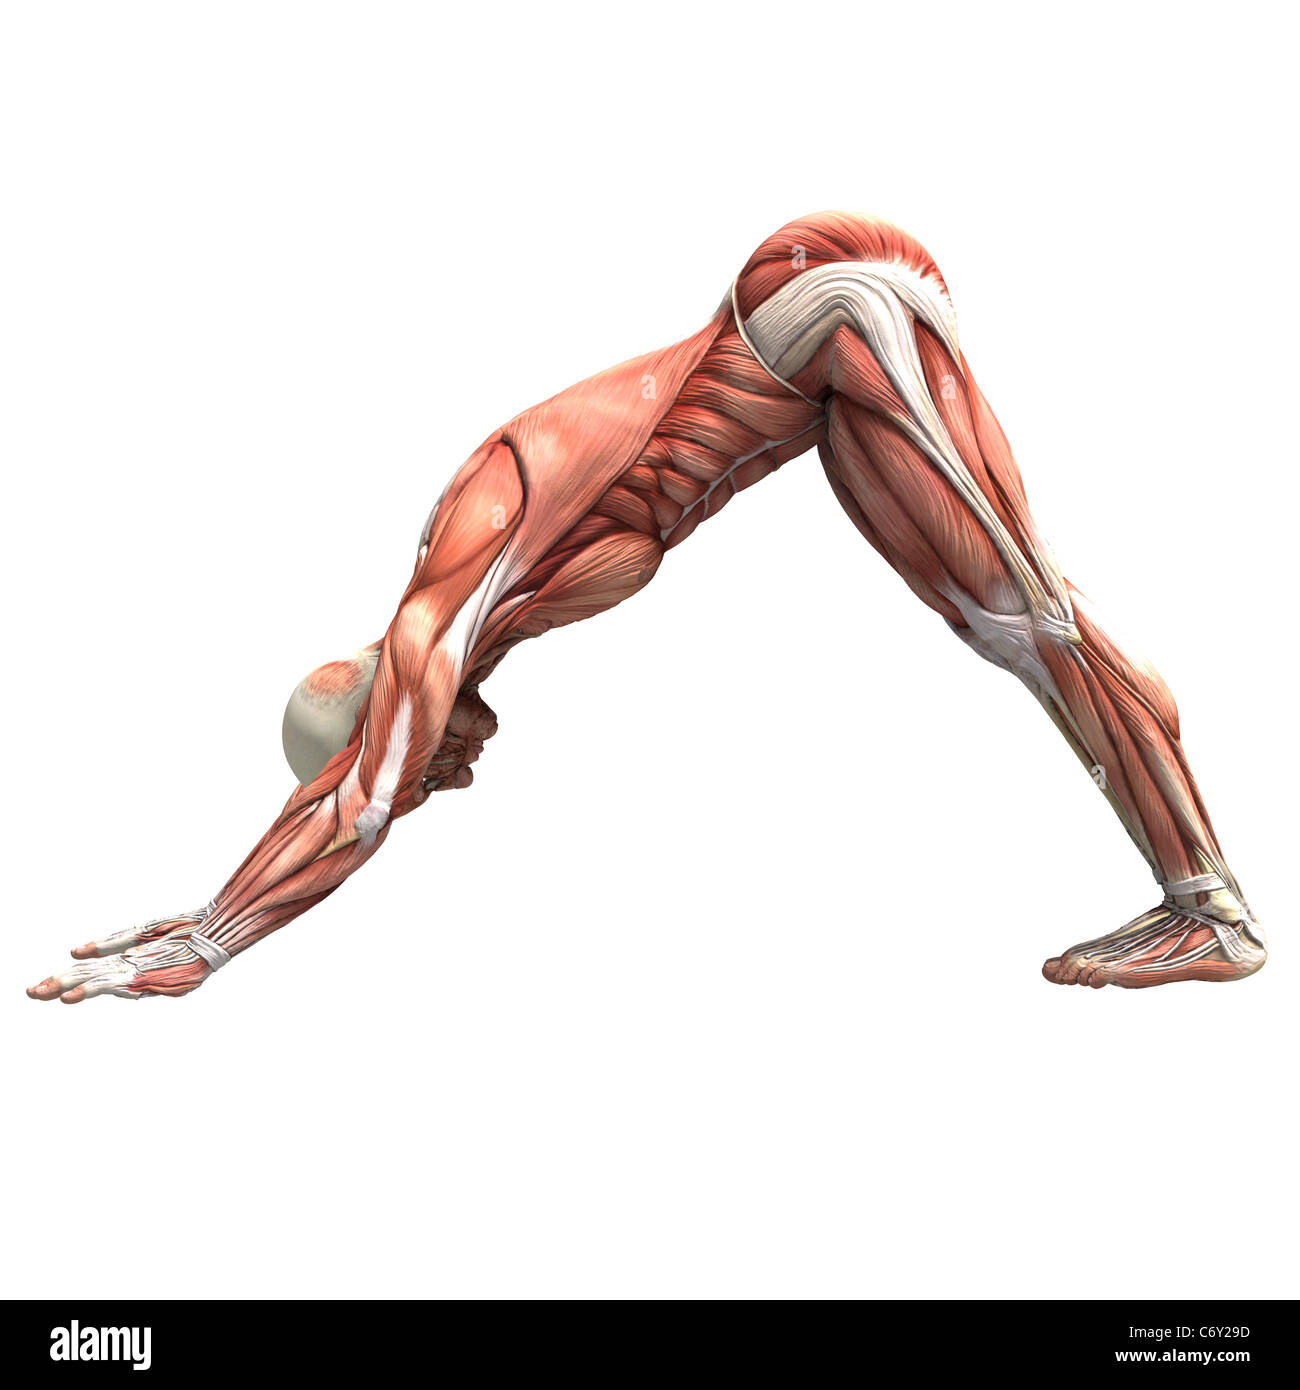 Eine menschliche männliche Figur mit Muskelgewebe in verschiedenen Posen für Yoga und Bewegung ausgesetzt. Stockfoto